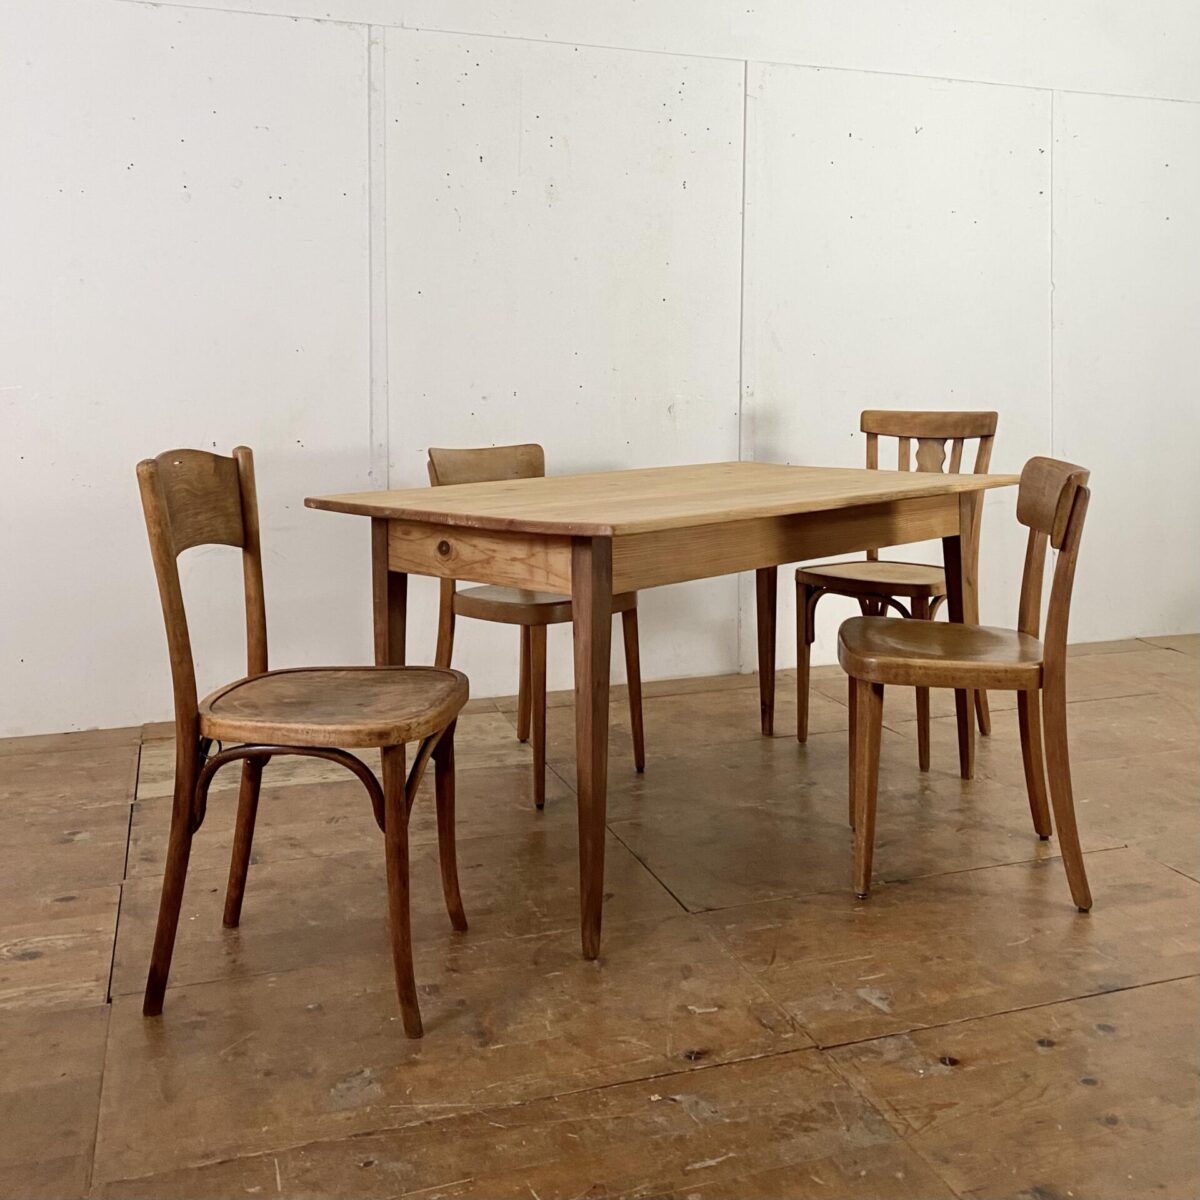 Biedermeiertisch aus Tanne. 150x88cm Höhe 75.5cm. Der Tisch ist in stabilem überarbeiteten Zustand, die Holz Oberflächen sind geschliffen und mit Naturöl behandelt. An dem Tisch finden 4-6 Personen Platz. 